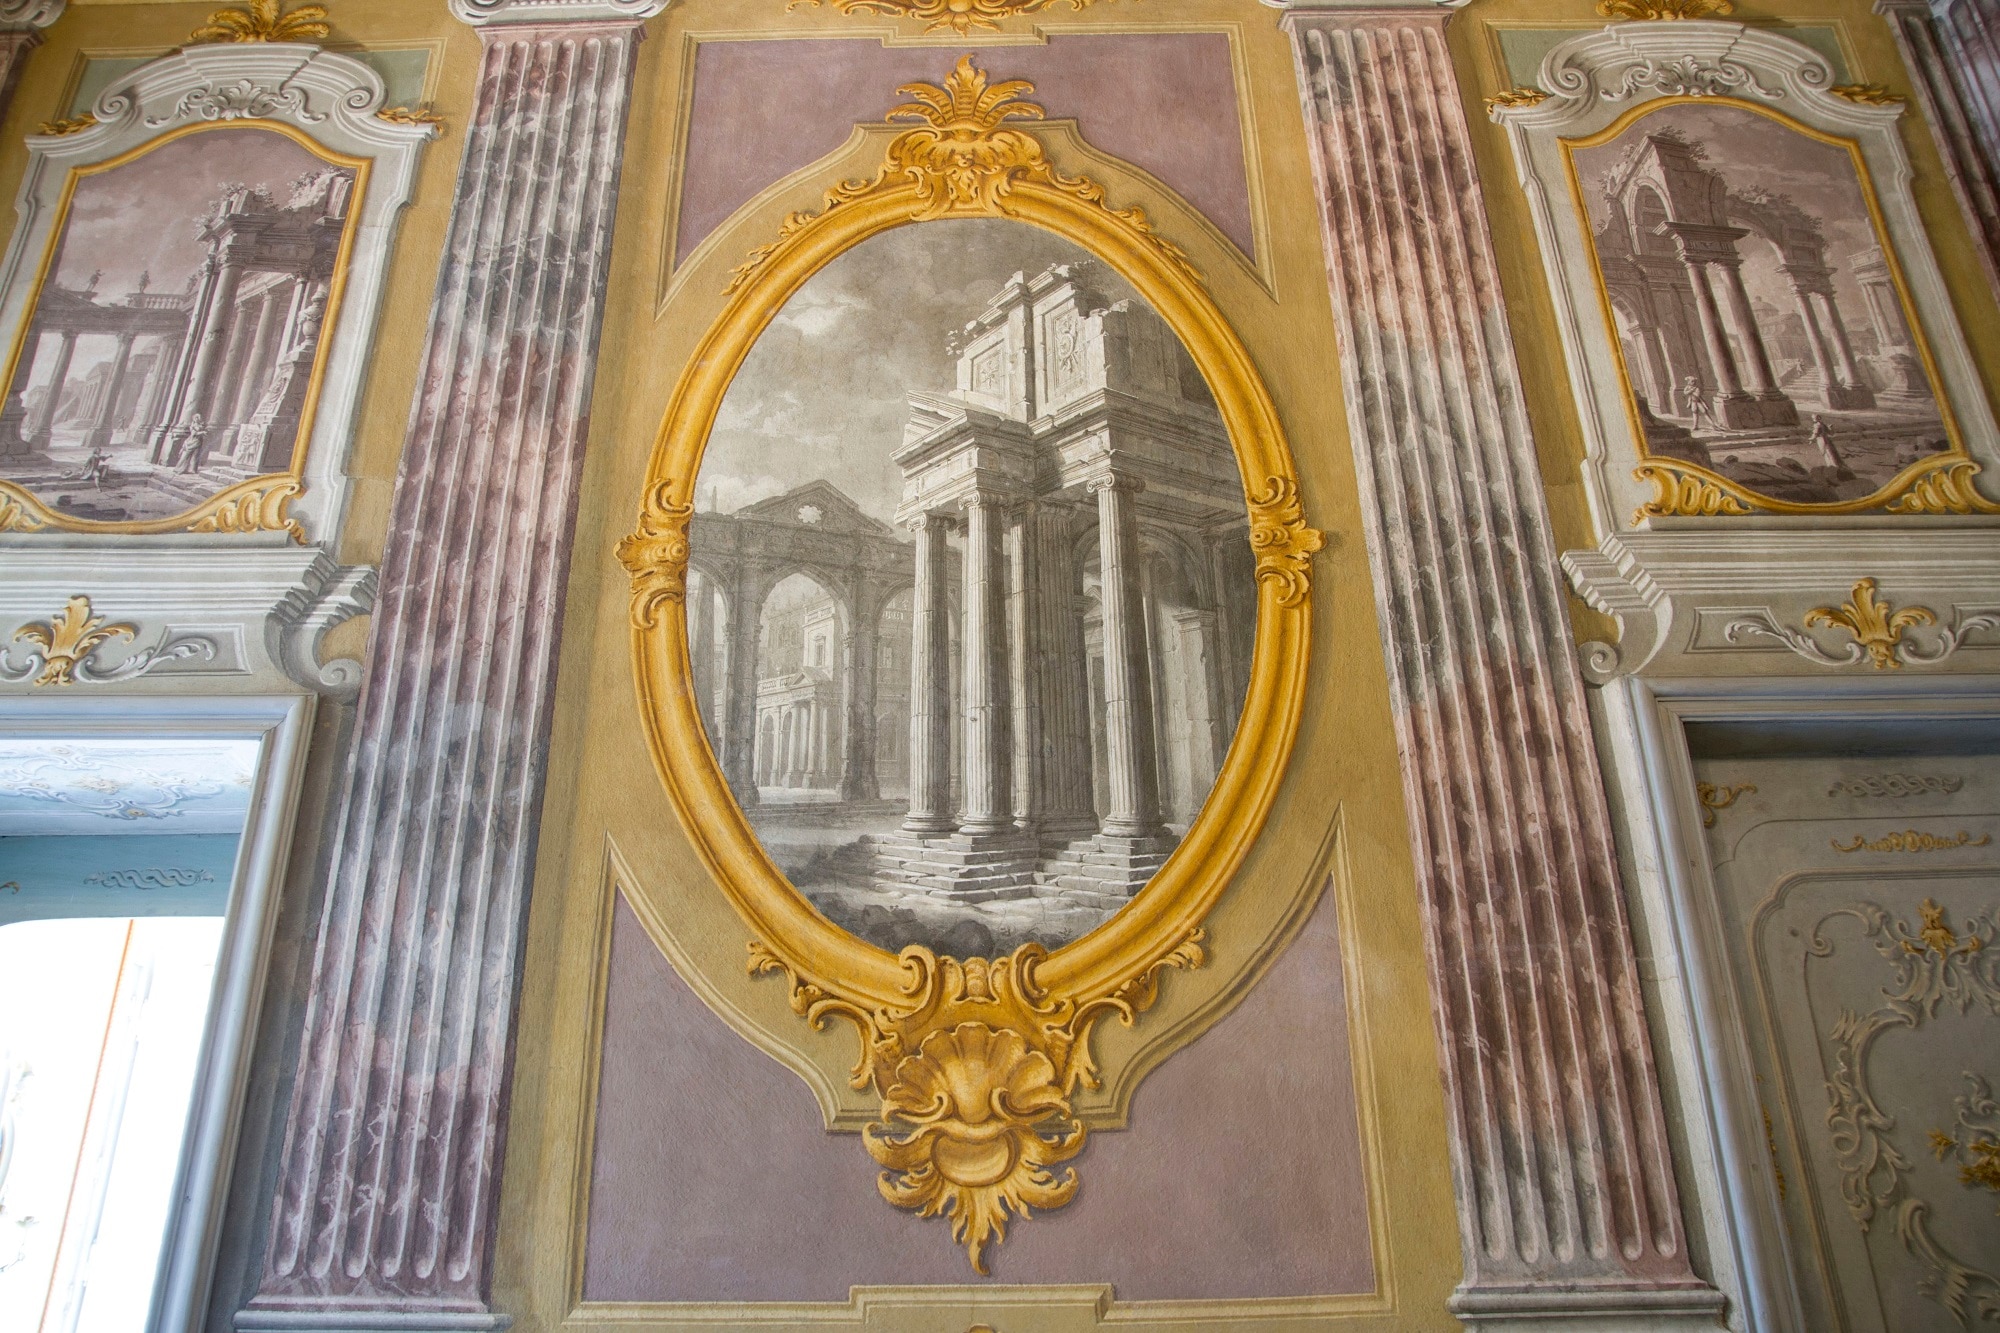 Paesaggio con rovine classiche, Giovanni Battista Alberoni, 1751, dettaglio di affresco della Sala delle prospettive, Palazzina di Caccia Stupinigi, frazione di Nichelino, Torino